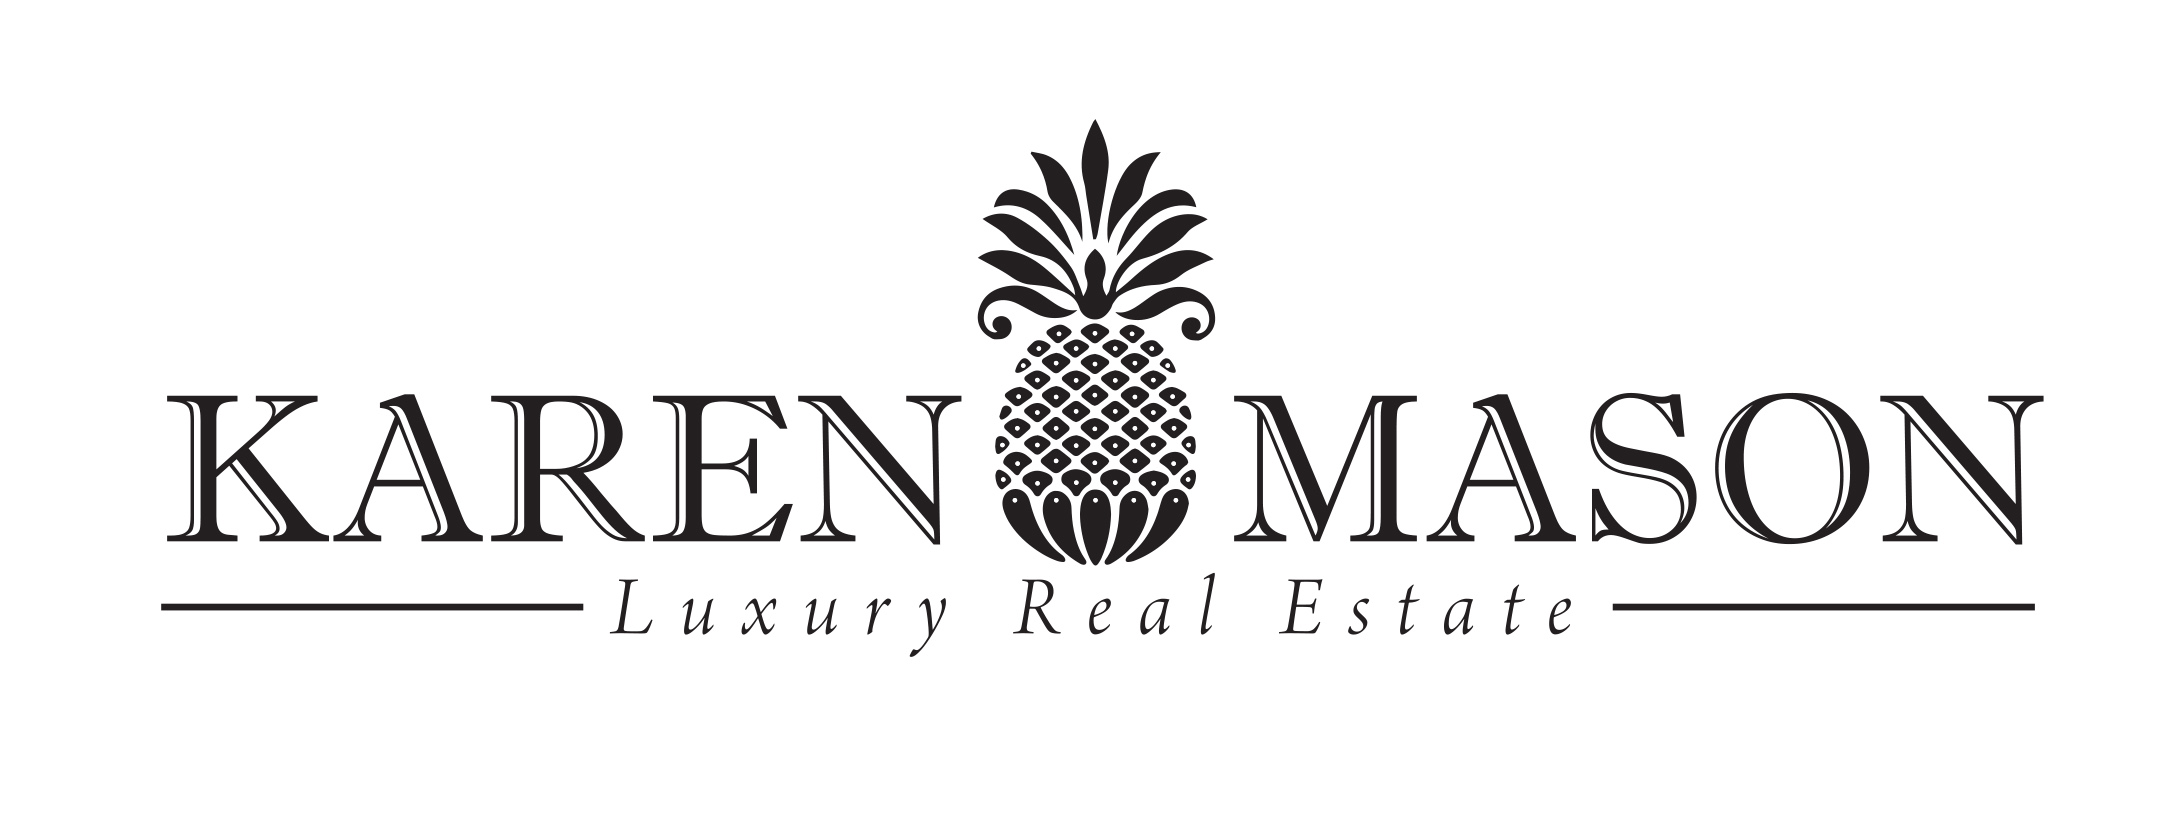 Karen Mason Luxury Real Estate